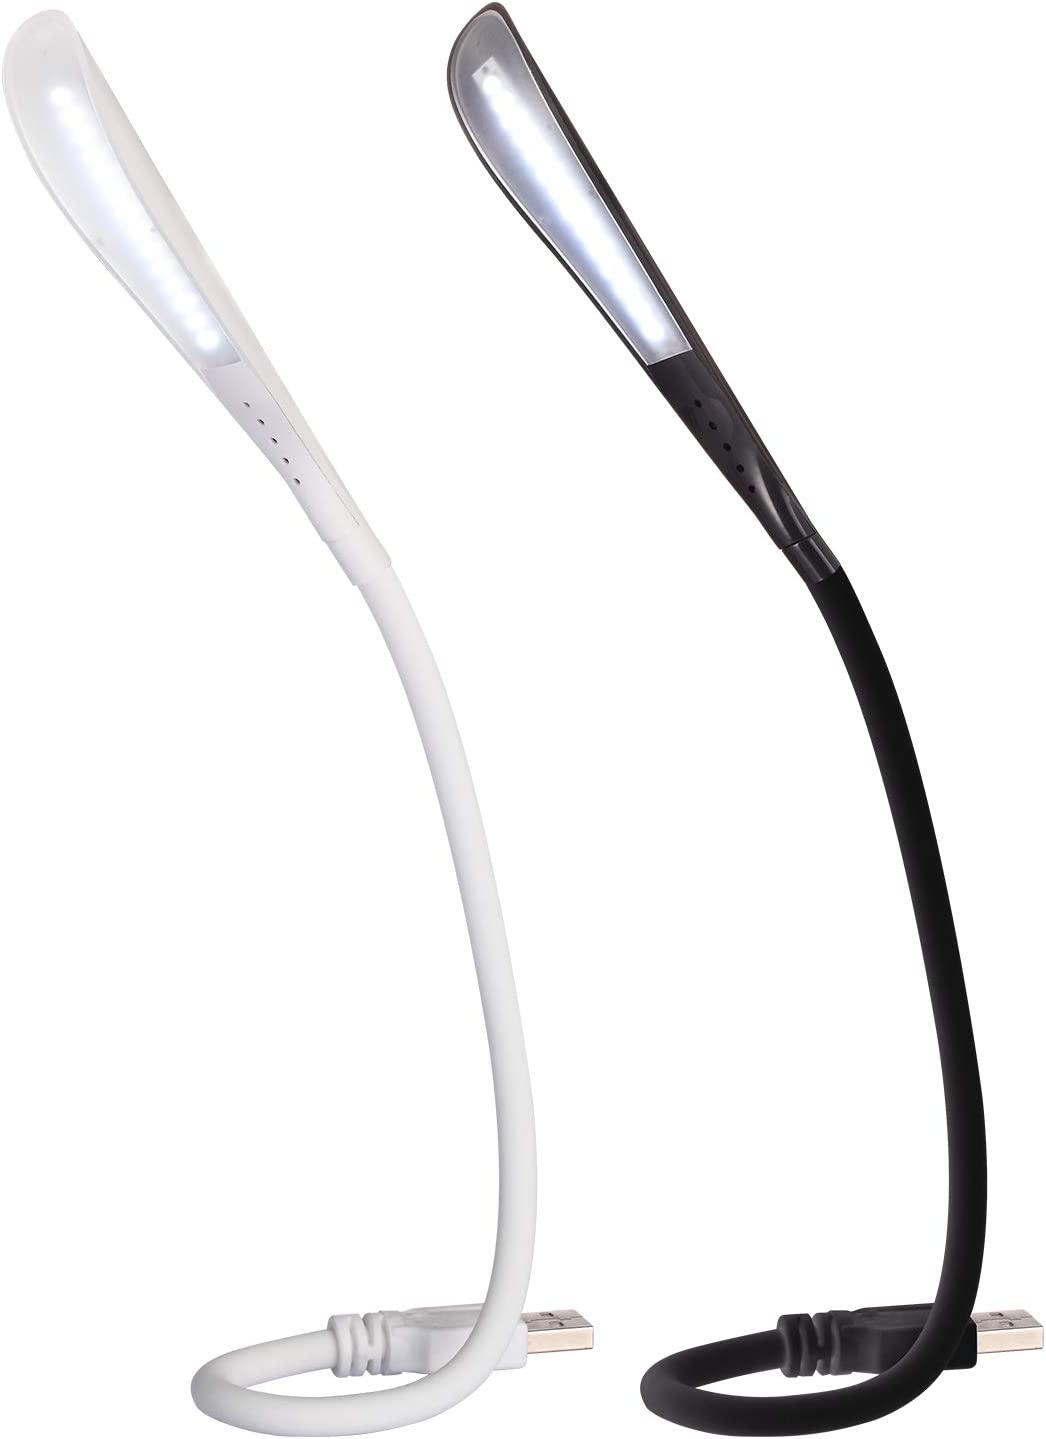 Fpxnb 2팩 USB LED 판독 램프, 조광 가능한 터치 컨트롤 램프, 14개의 LED 비드, 유연하게 조정 가능한 올 앵글 튜브(2개 세트, 블랙 & 화이트)